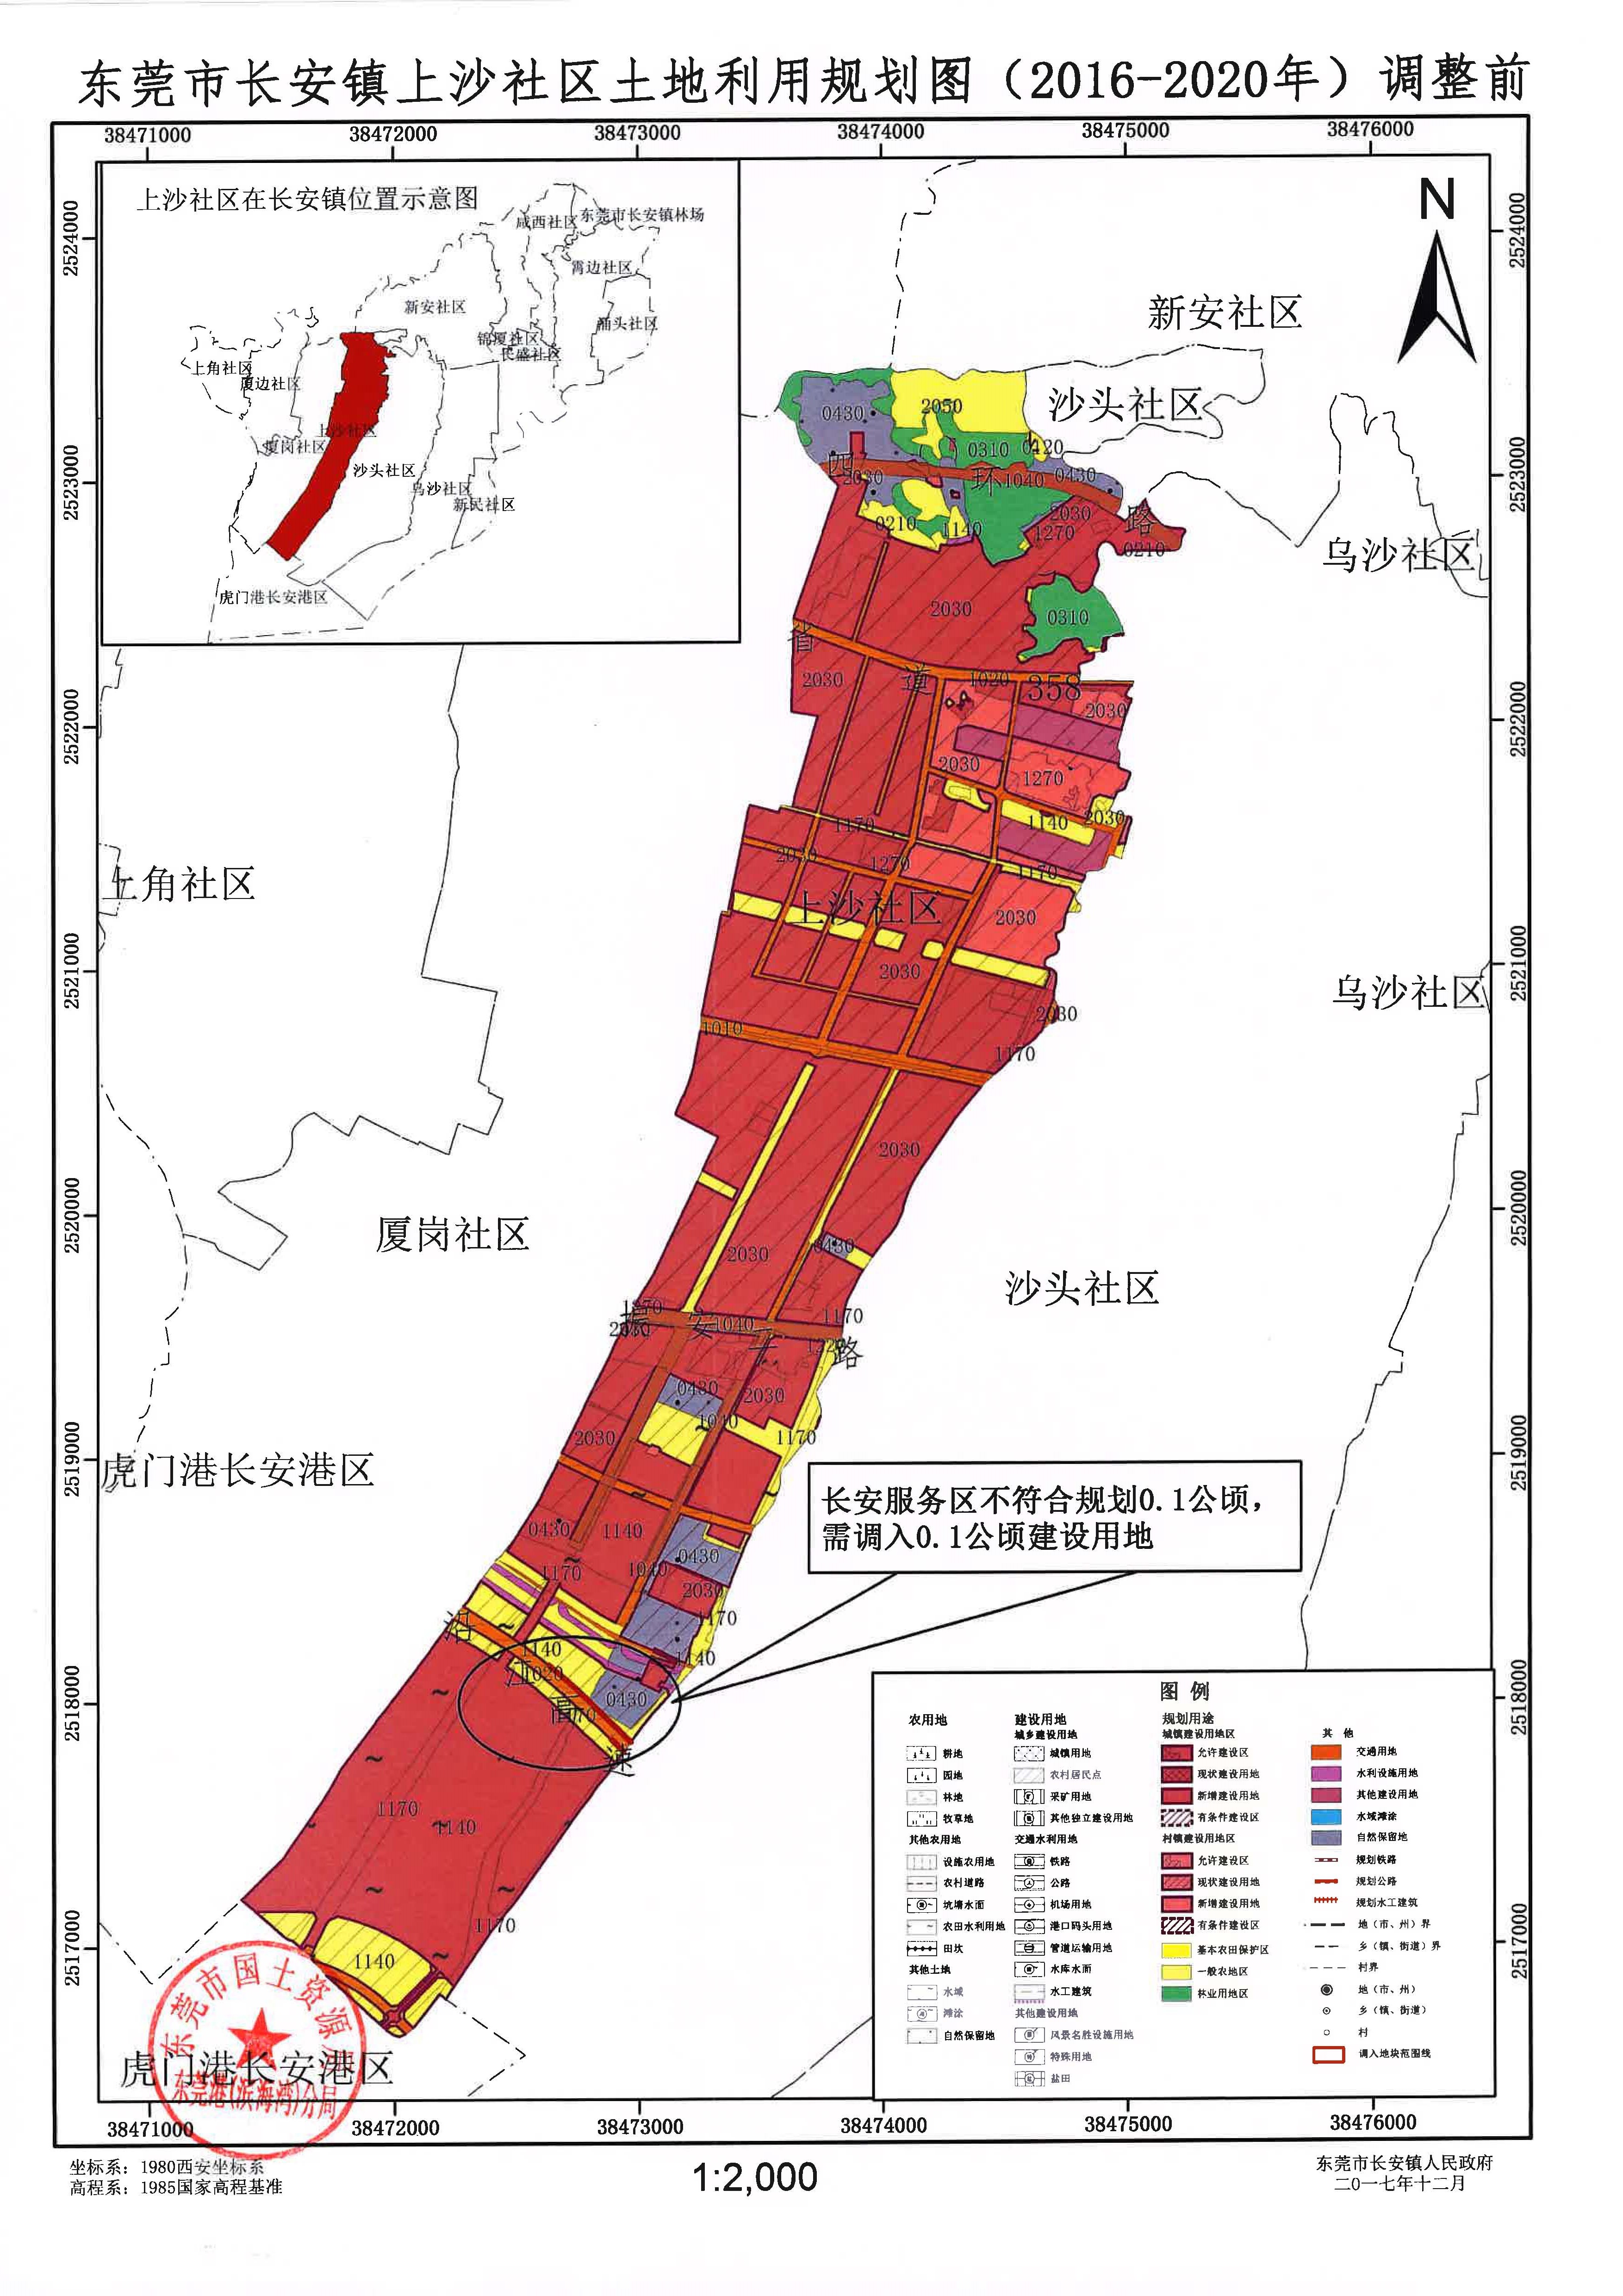 东莞市长安镇上沙社区土地利用规划(2016-2020)的公告